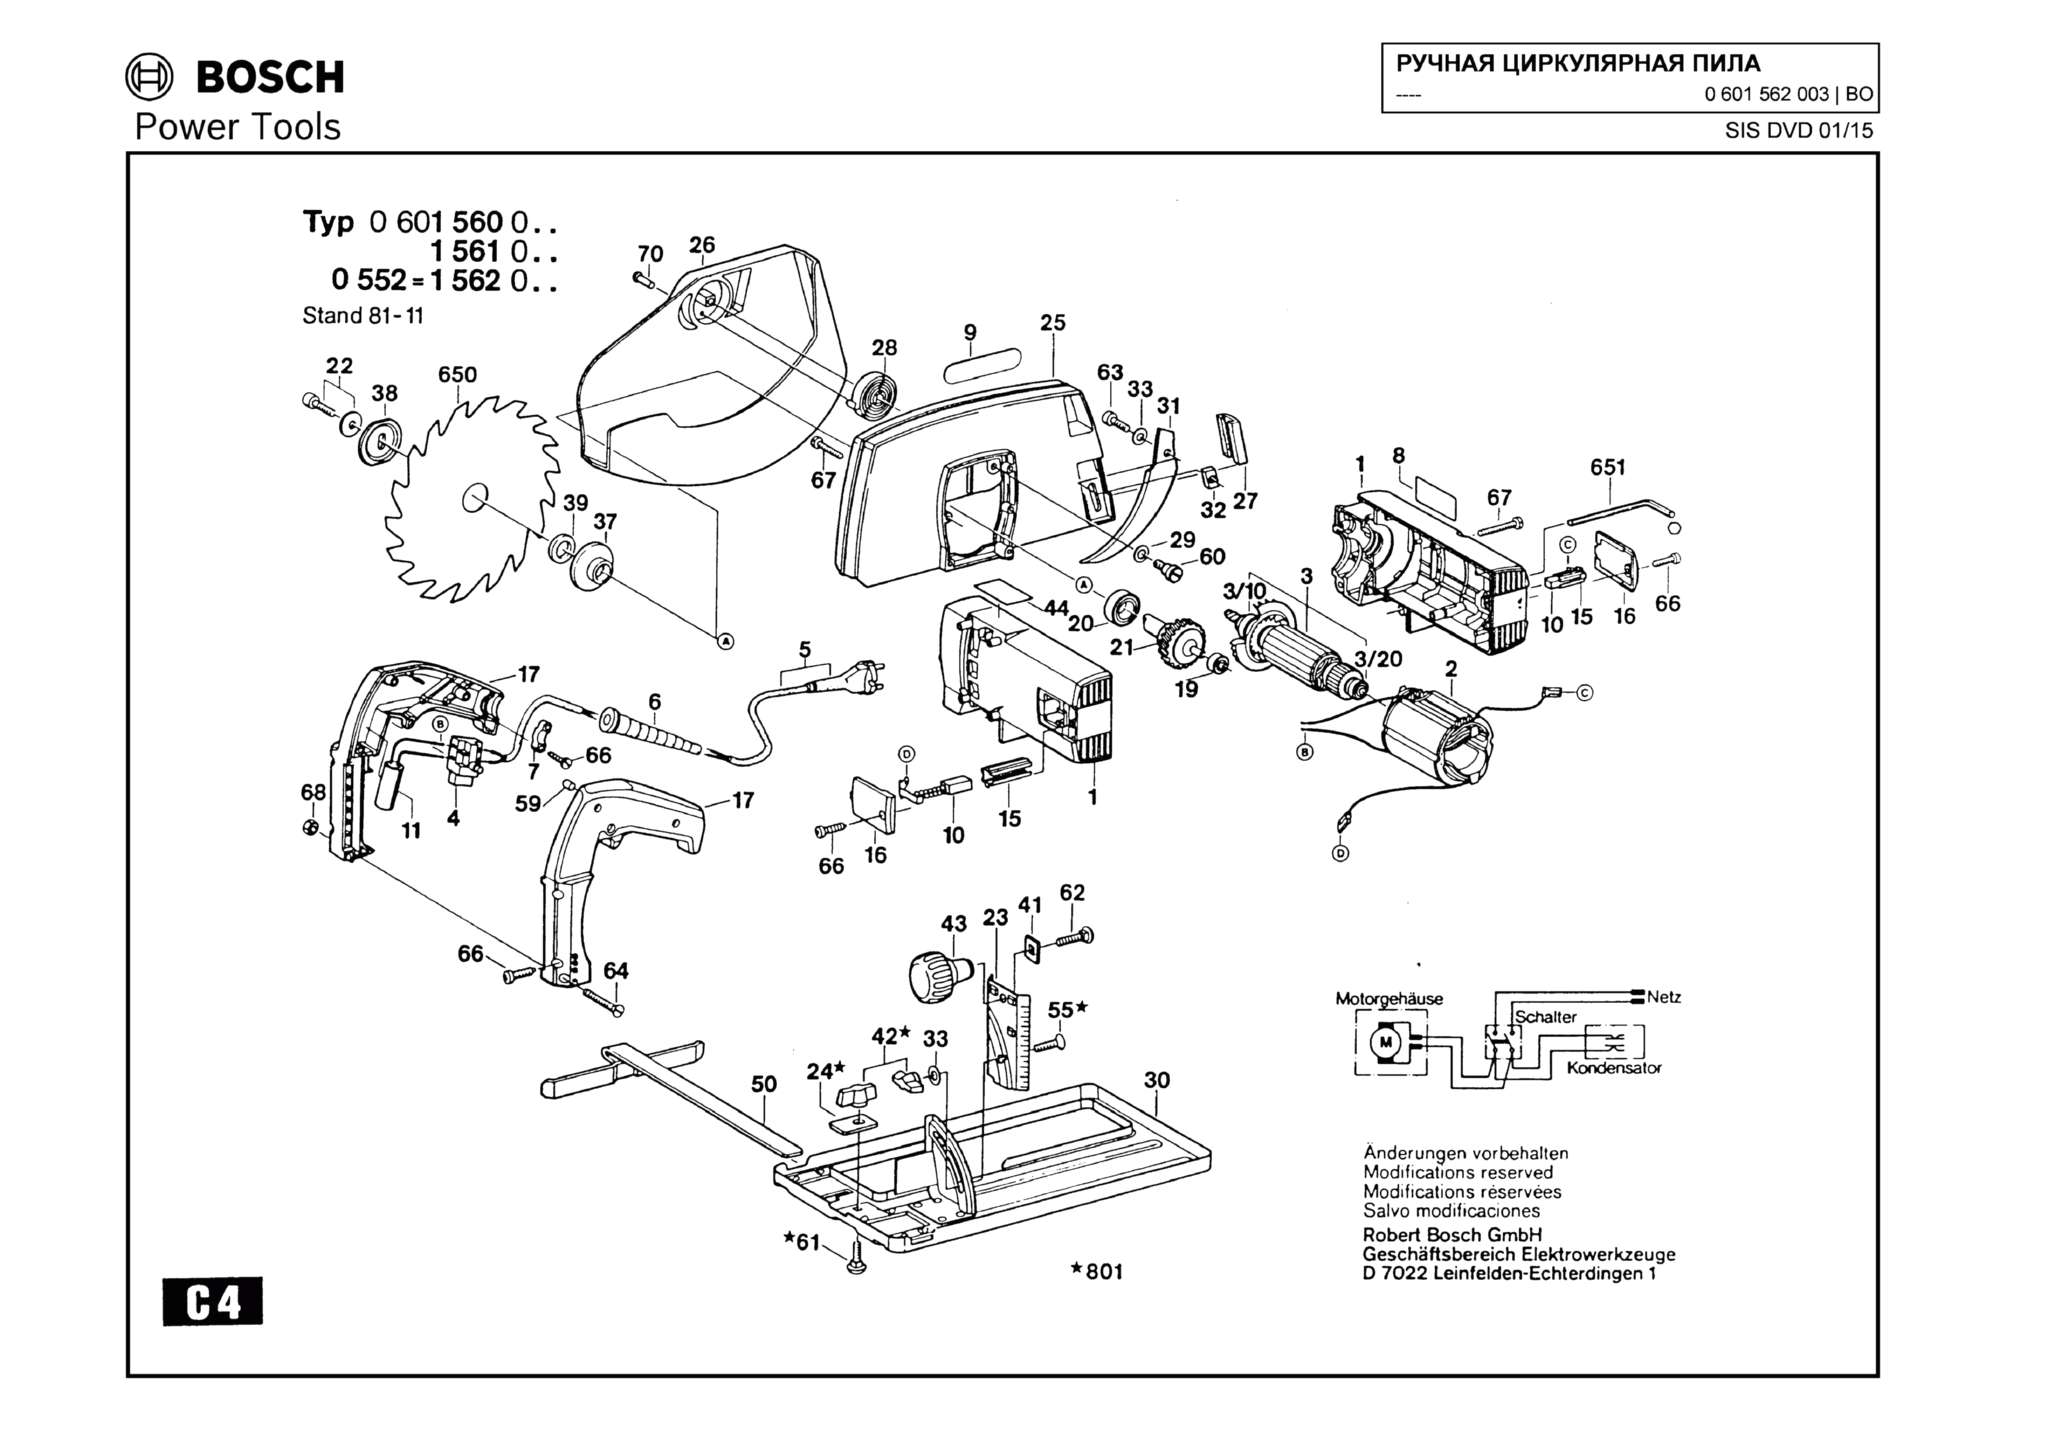 Запчасти, схема и деталировка Bosch (ТИП 0601562003)